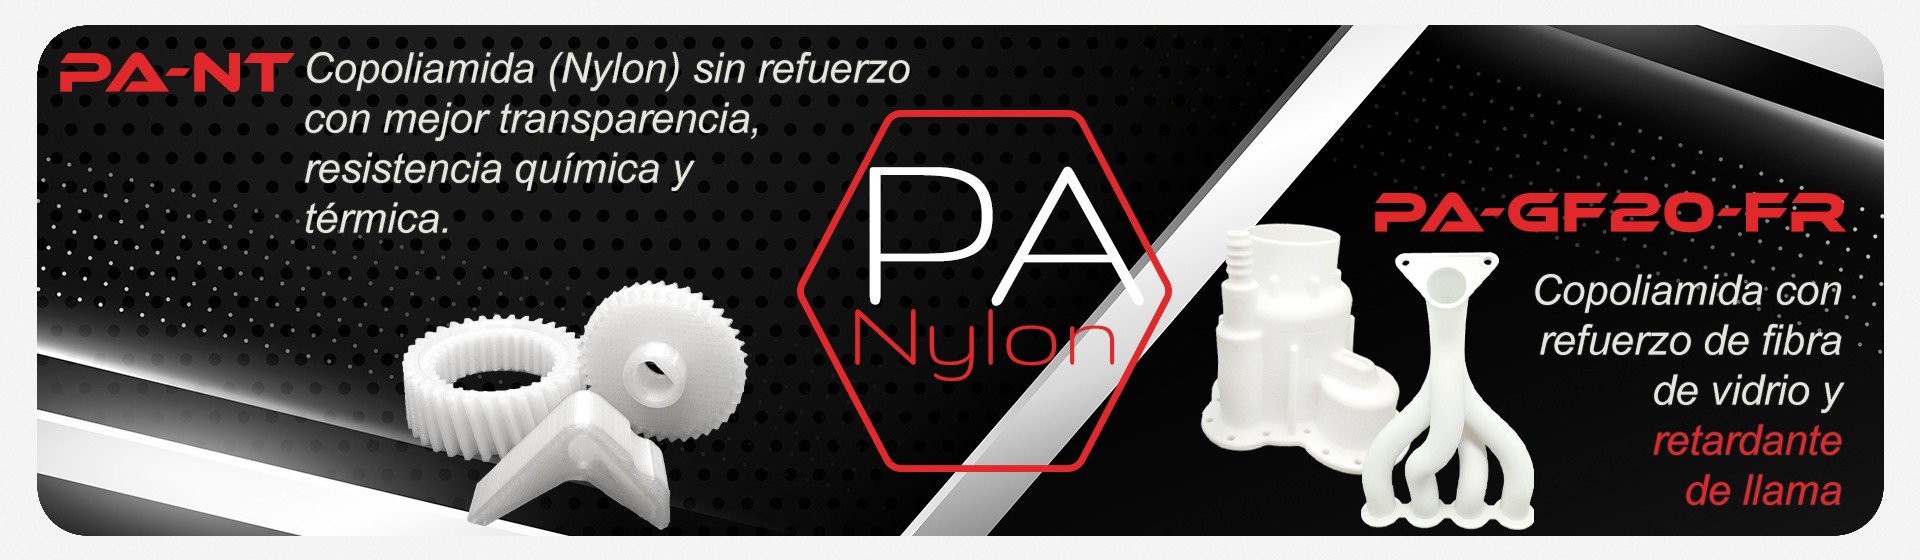 PA - Nylon